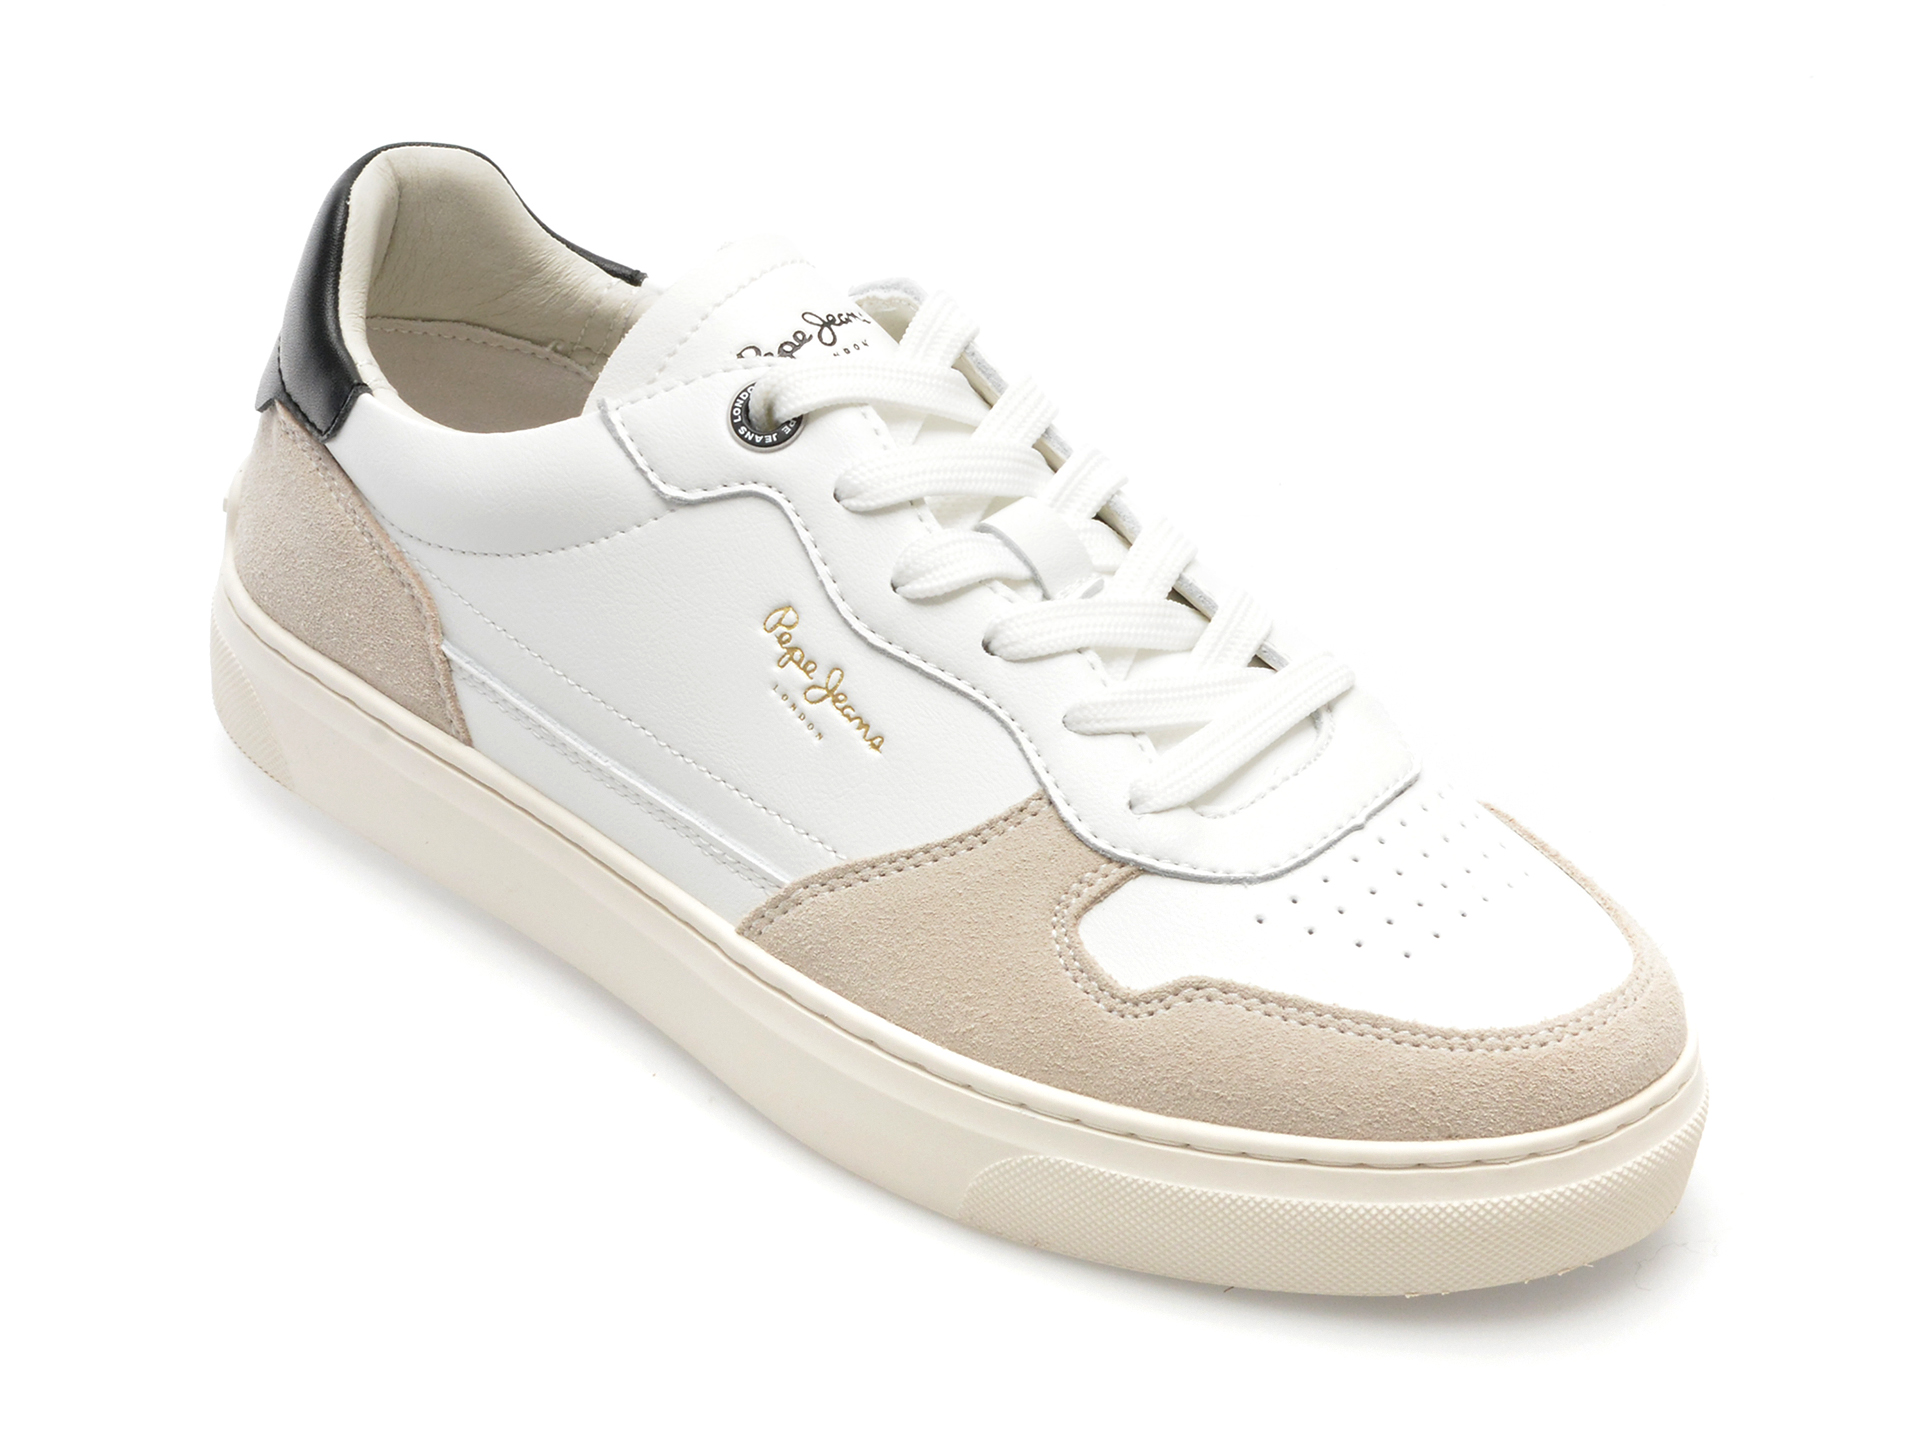 Pantofi casual PEPE JEANS albi, CAMDEN STREET, din piele ecologica